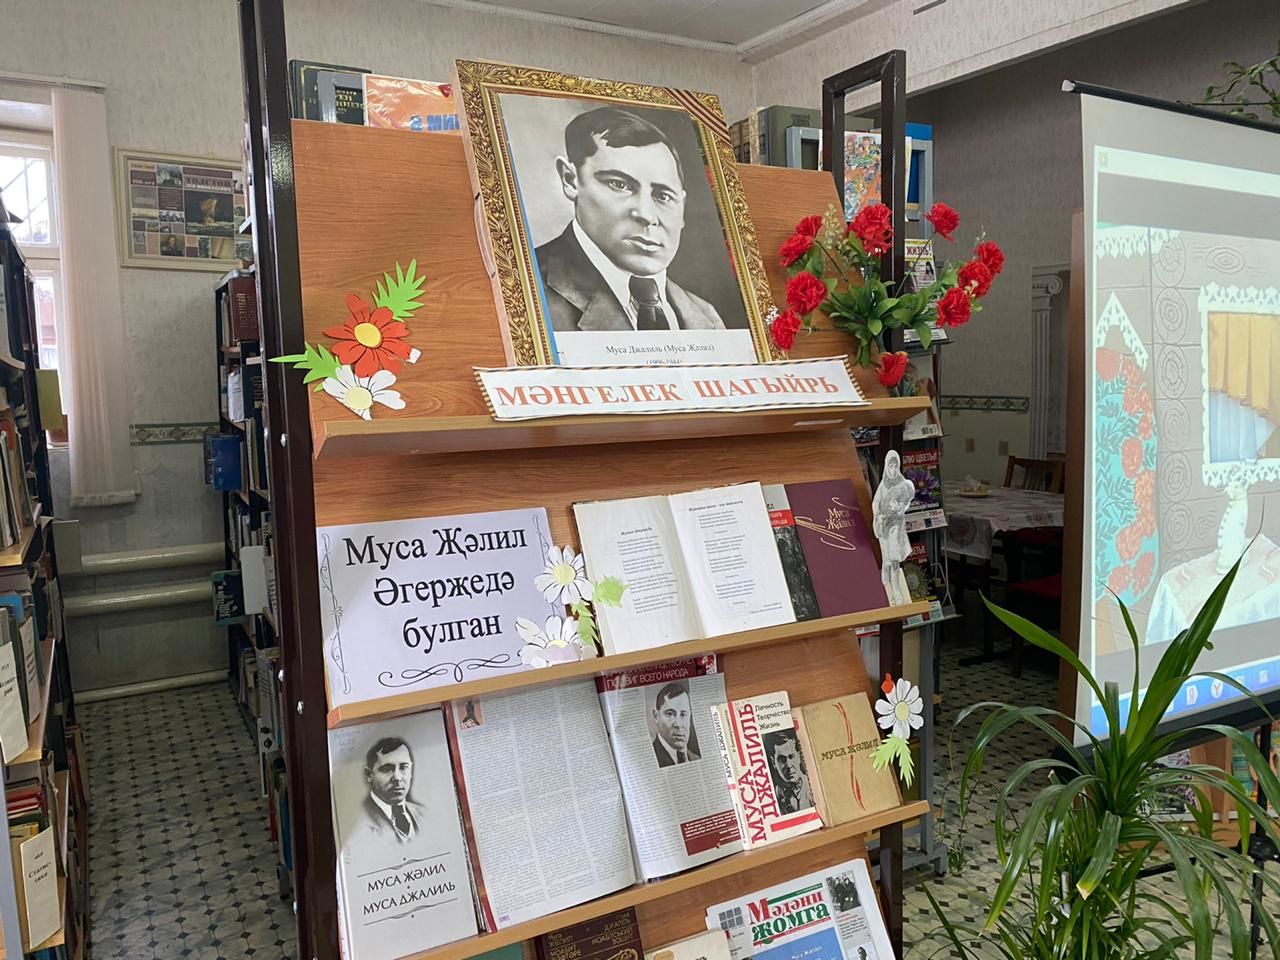 В центральной библиотеке чествовали победителей конкурса "Джалиловские чтения"